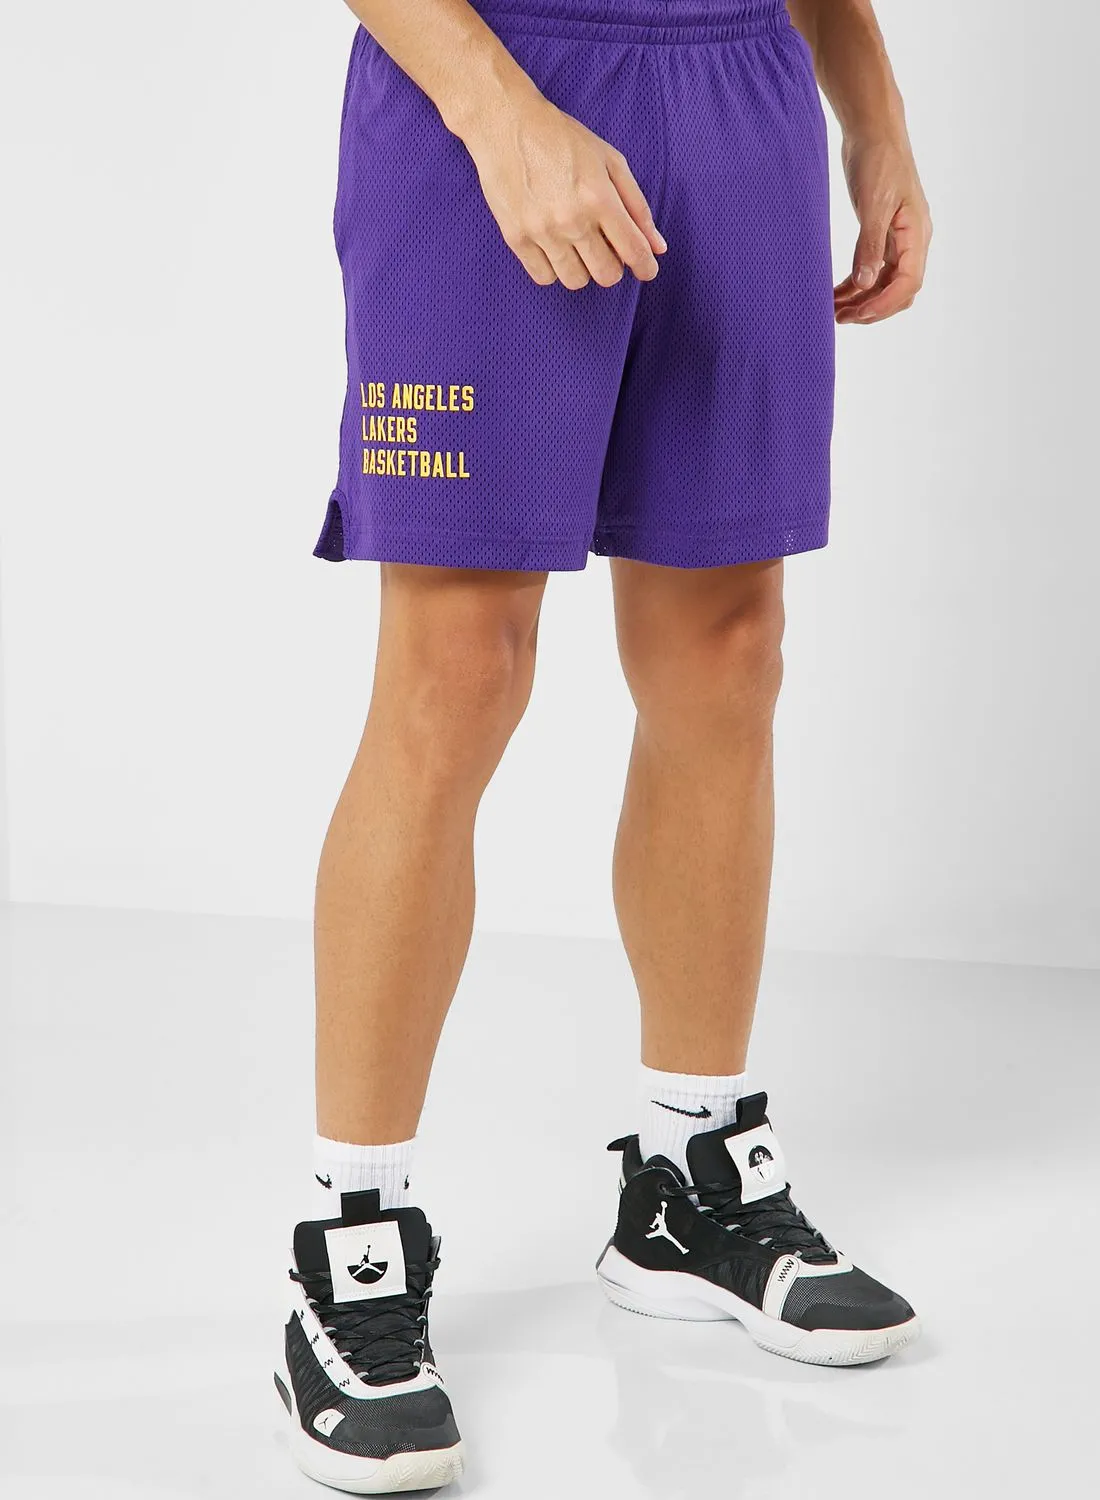 Nike Los Angeles Lakers Openhole Shorts